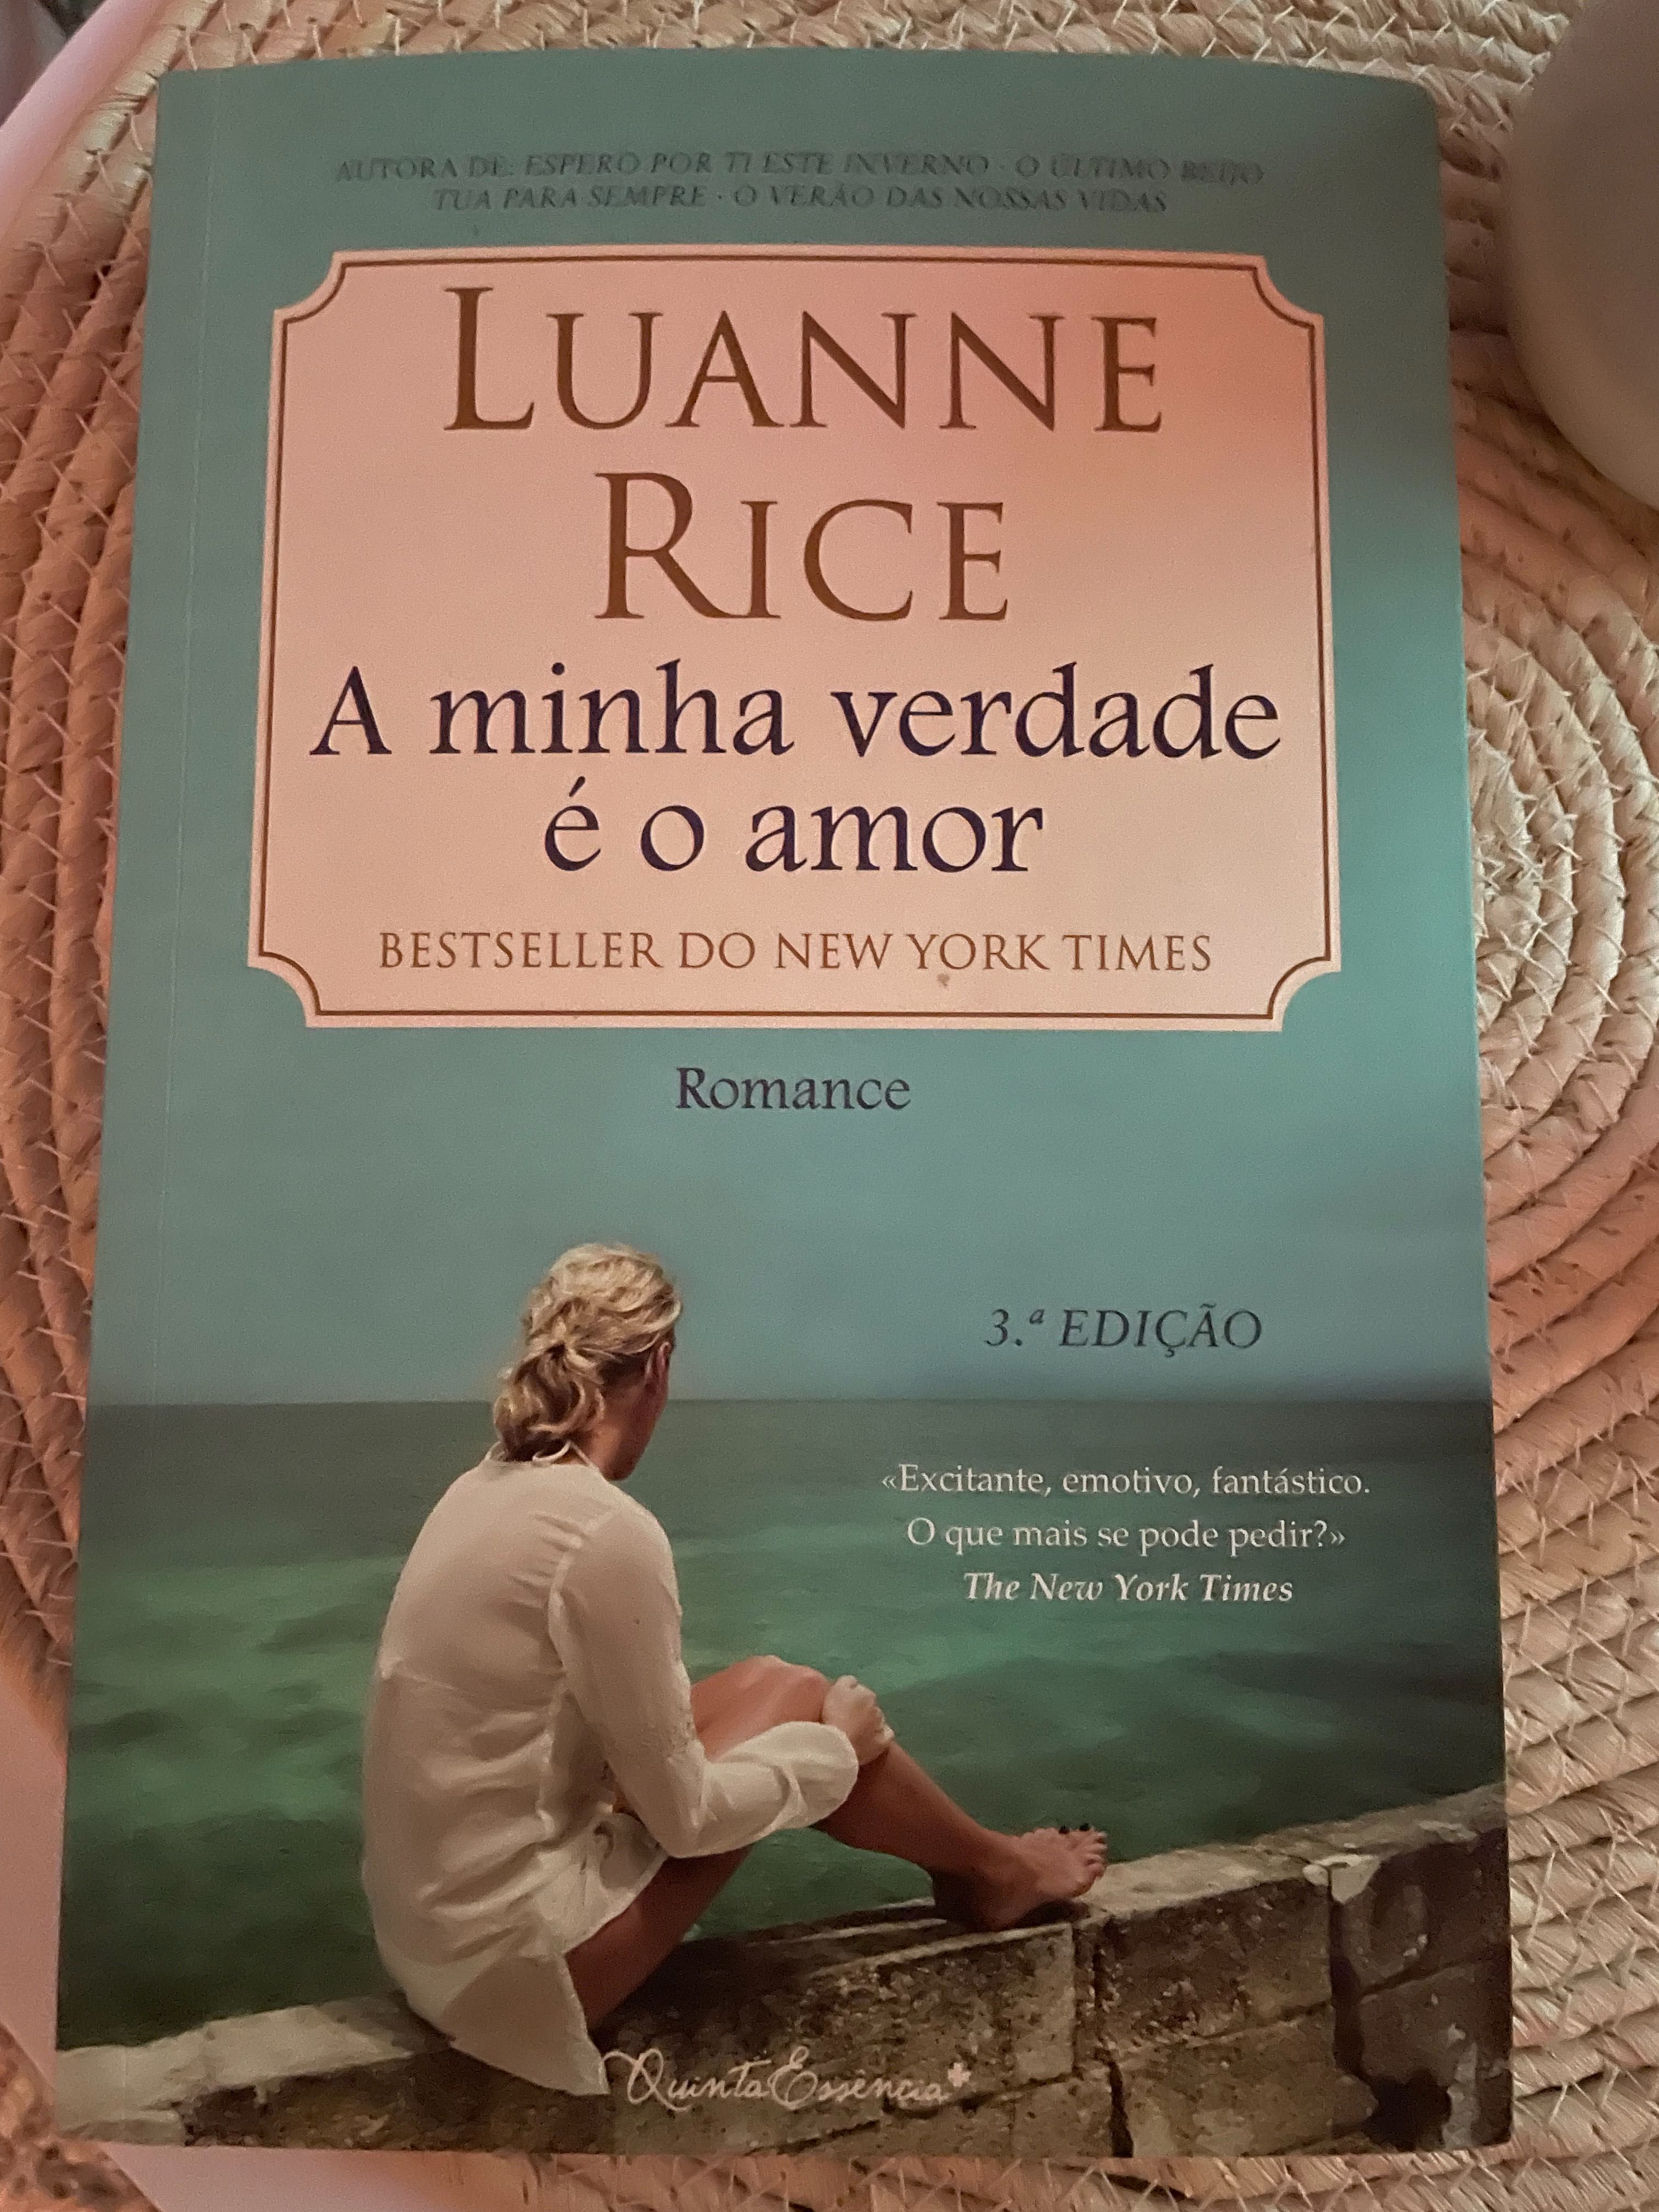 Livro “ A minha verade é o amor” de Luanne Rich